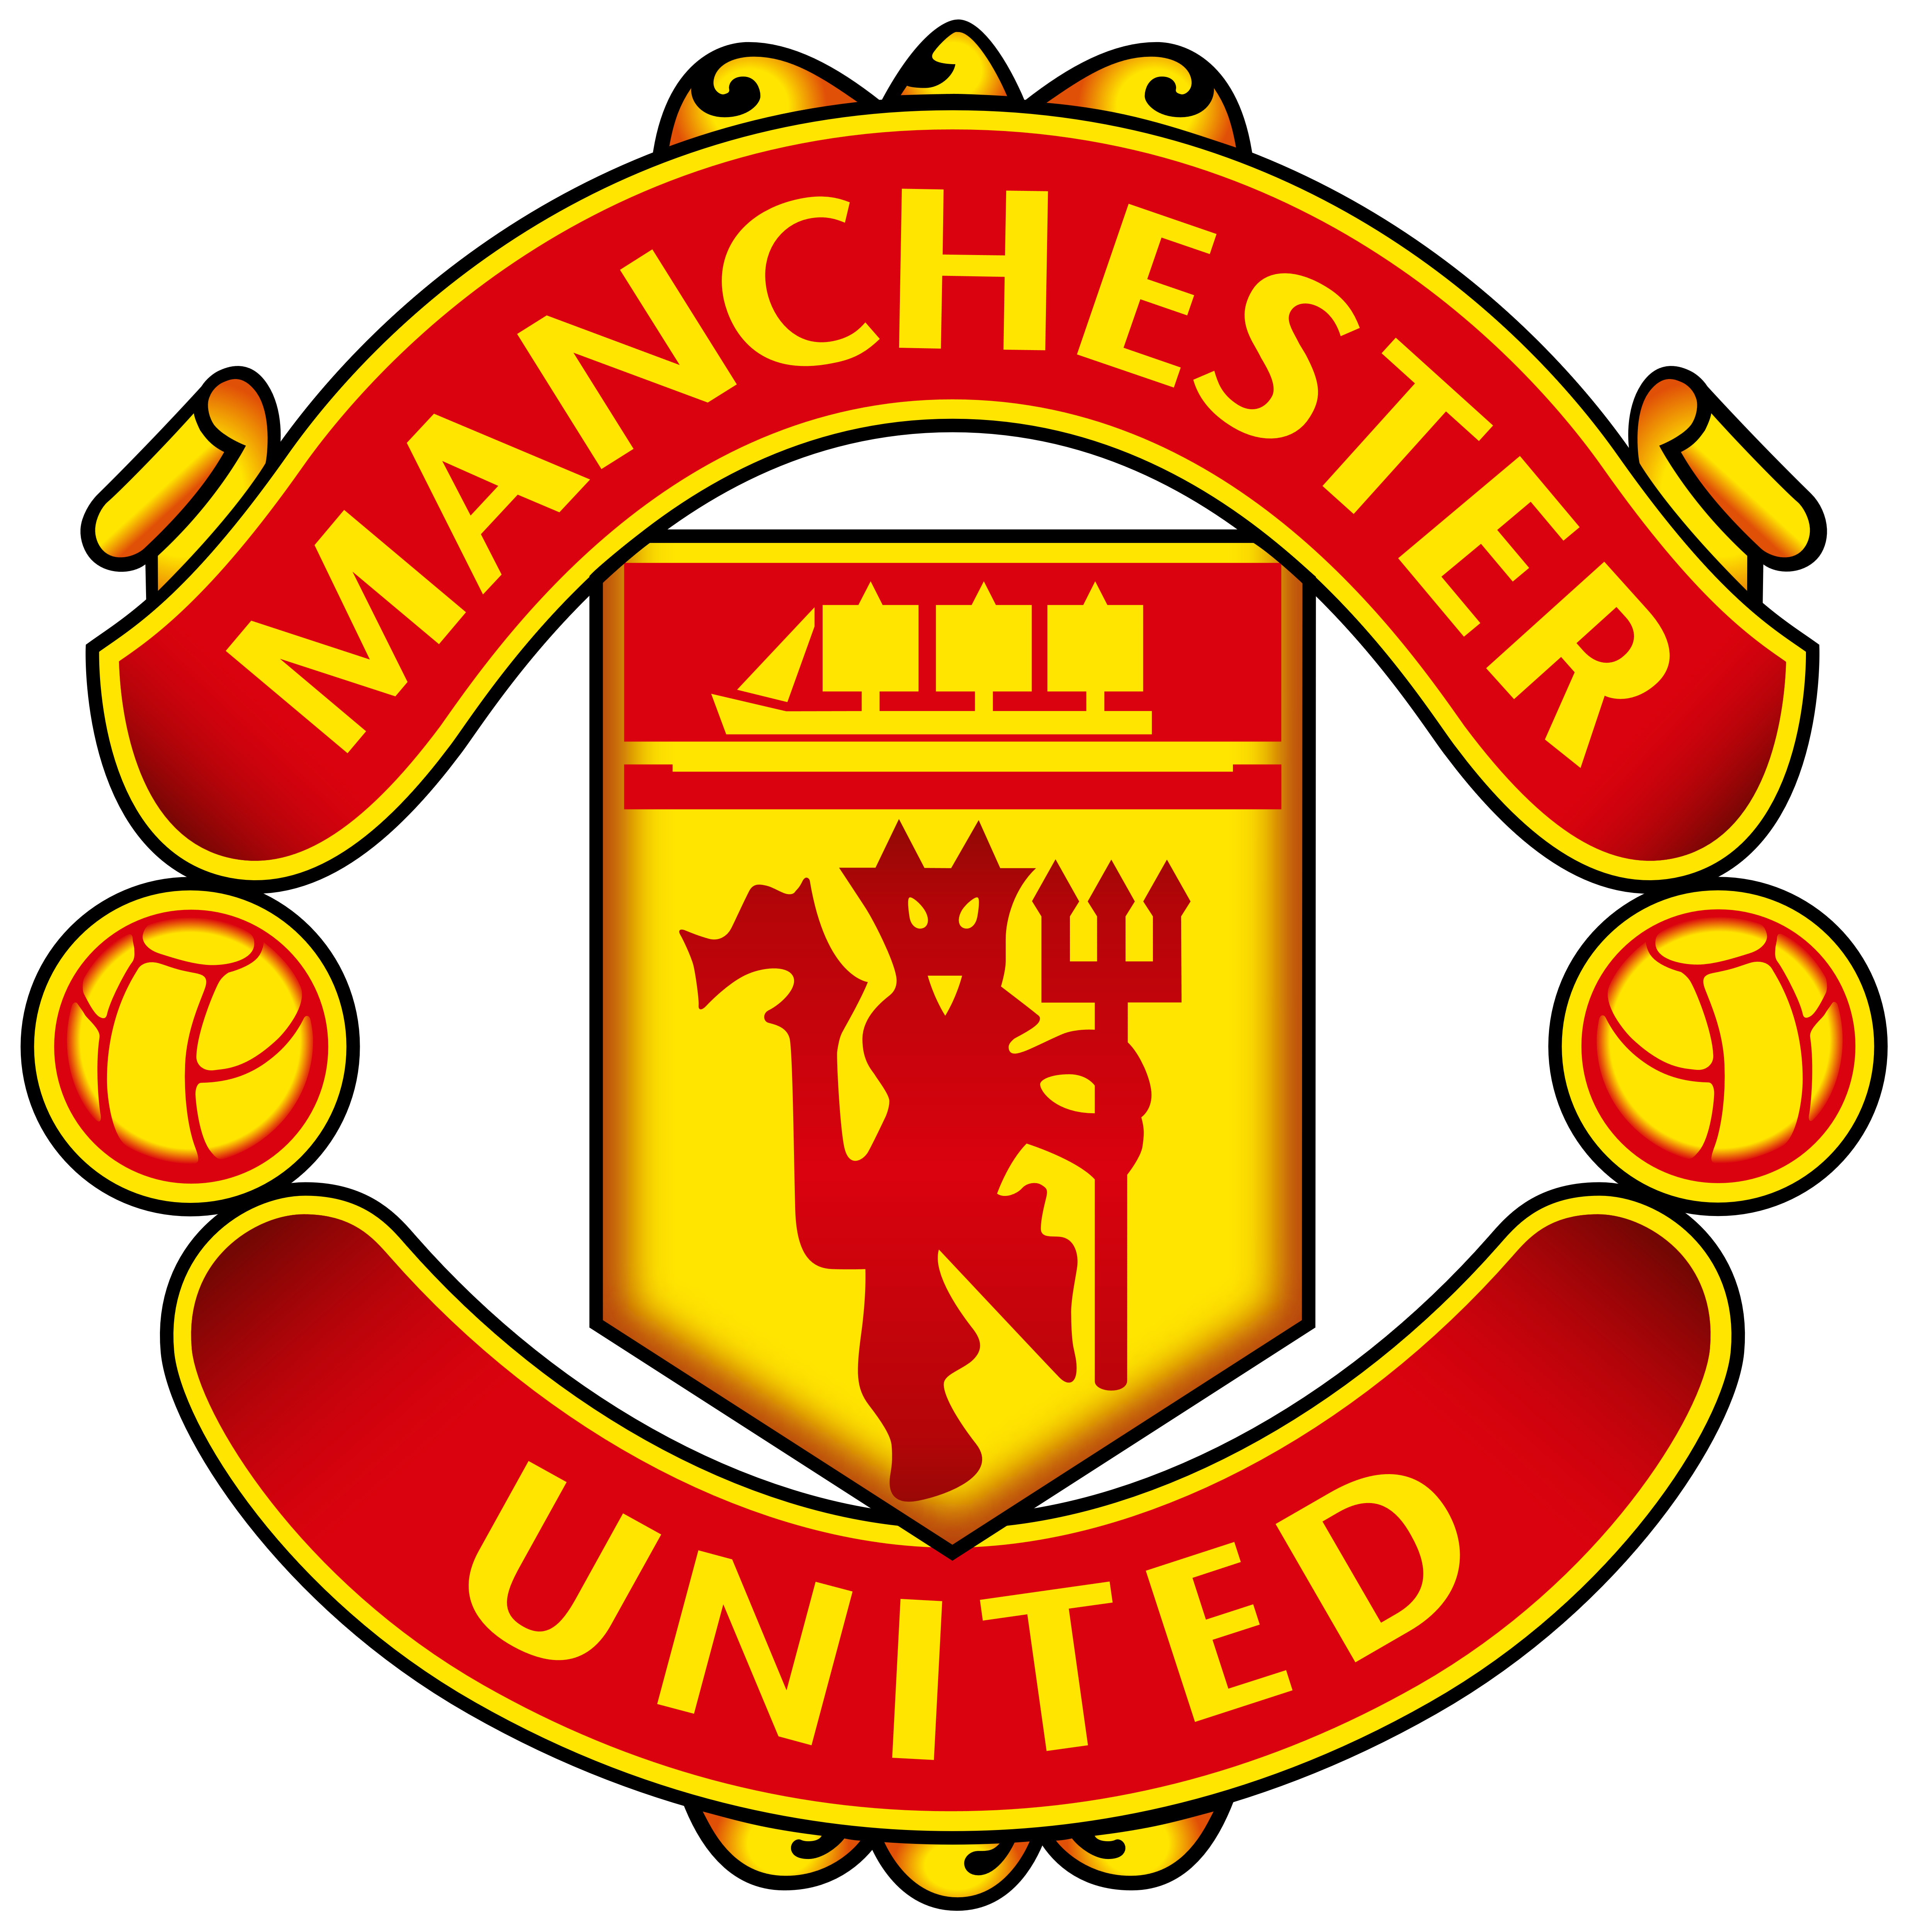 Download Logo Manchester United Hd - KibrisPDR